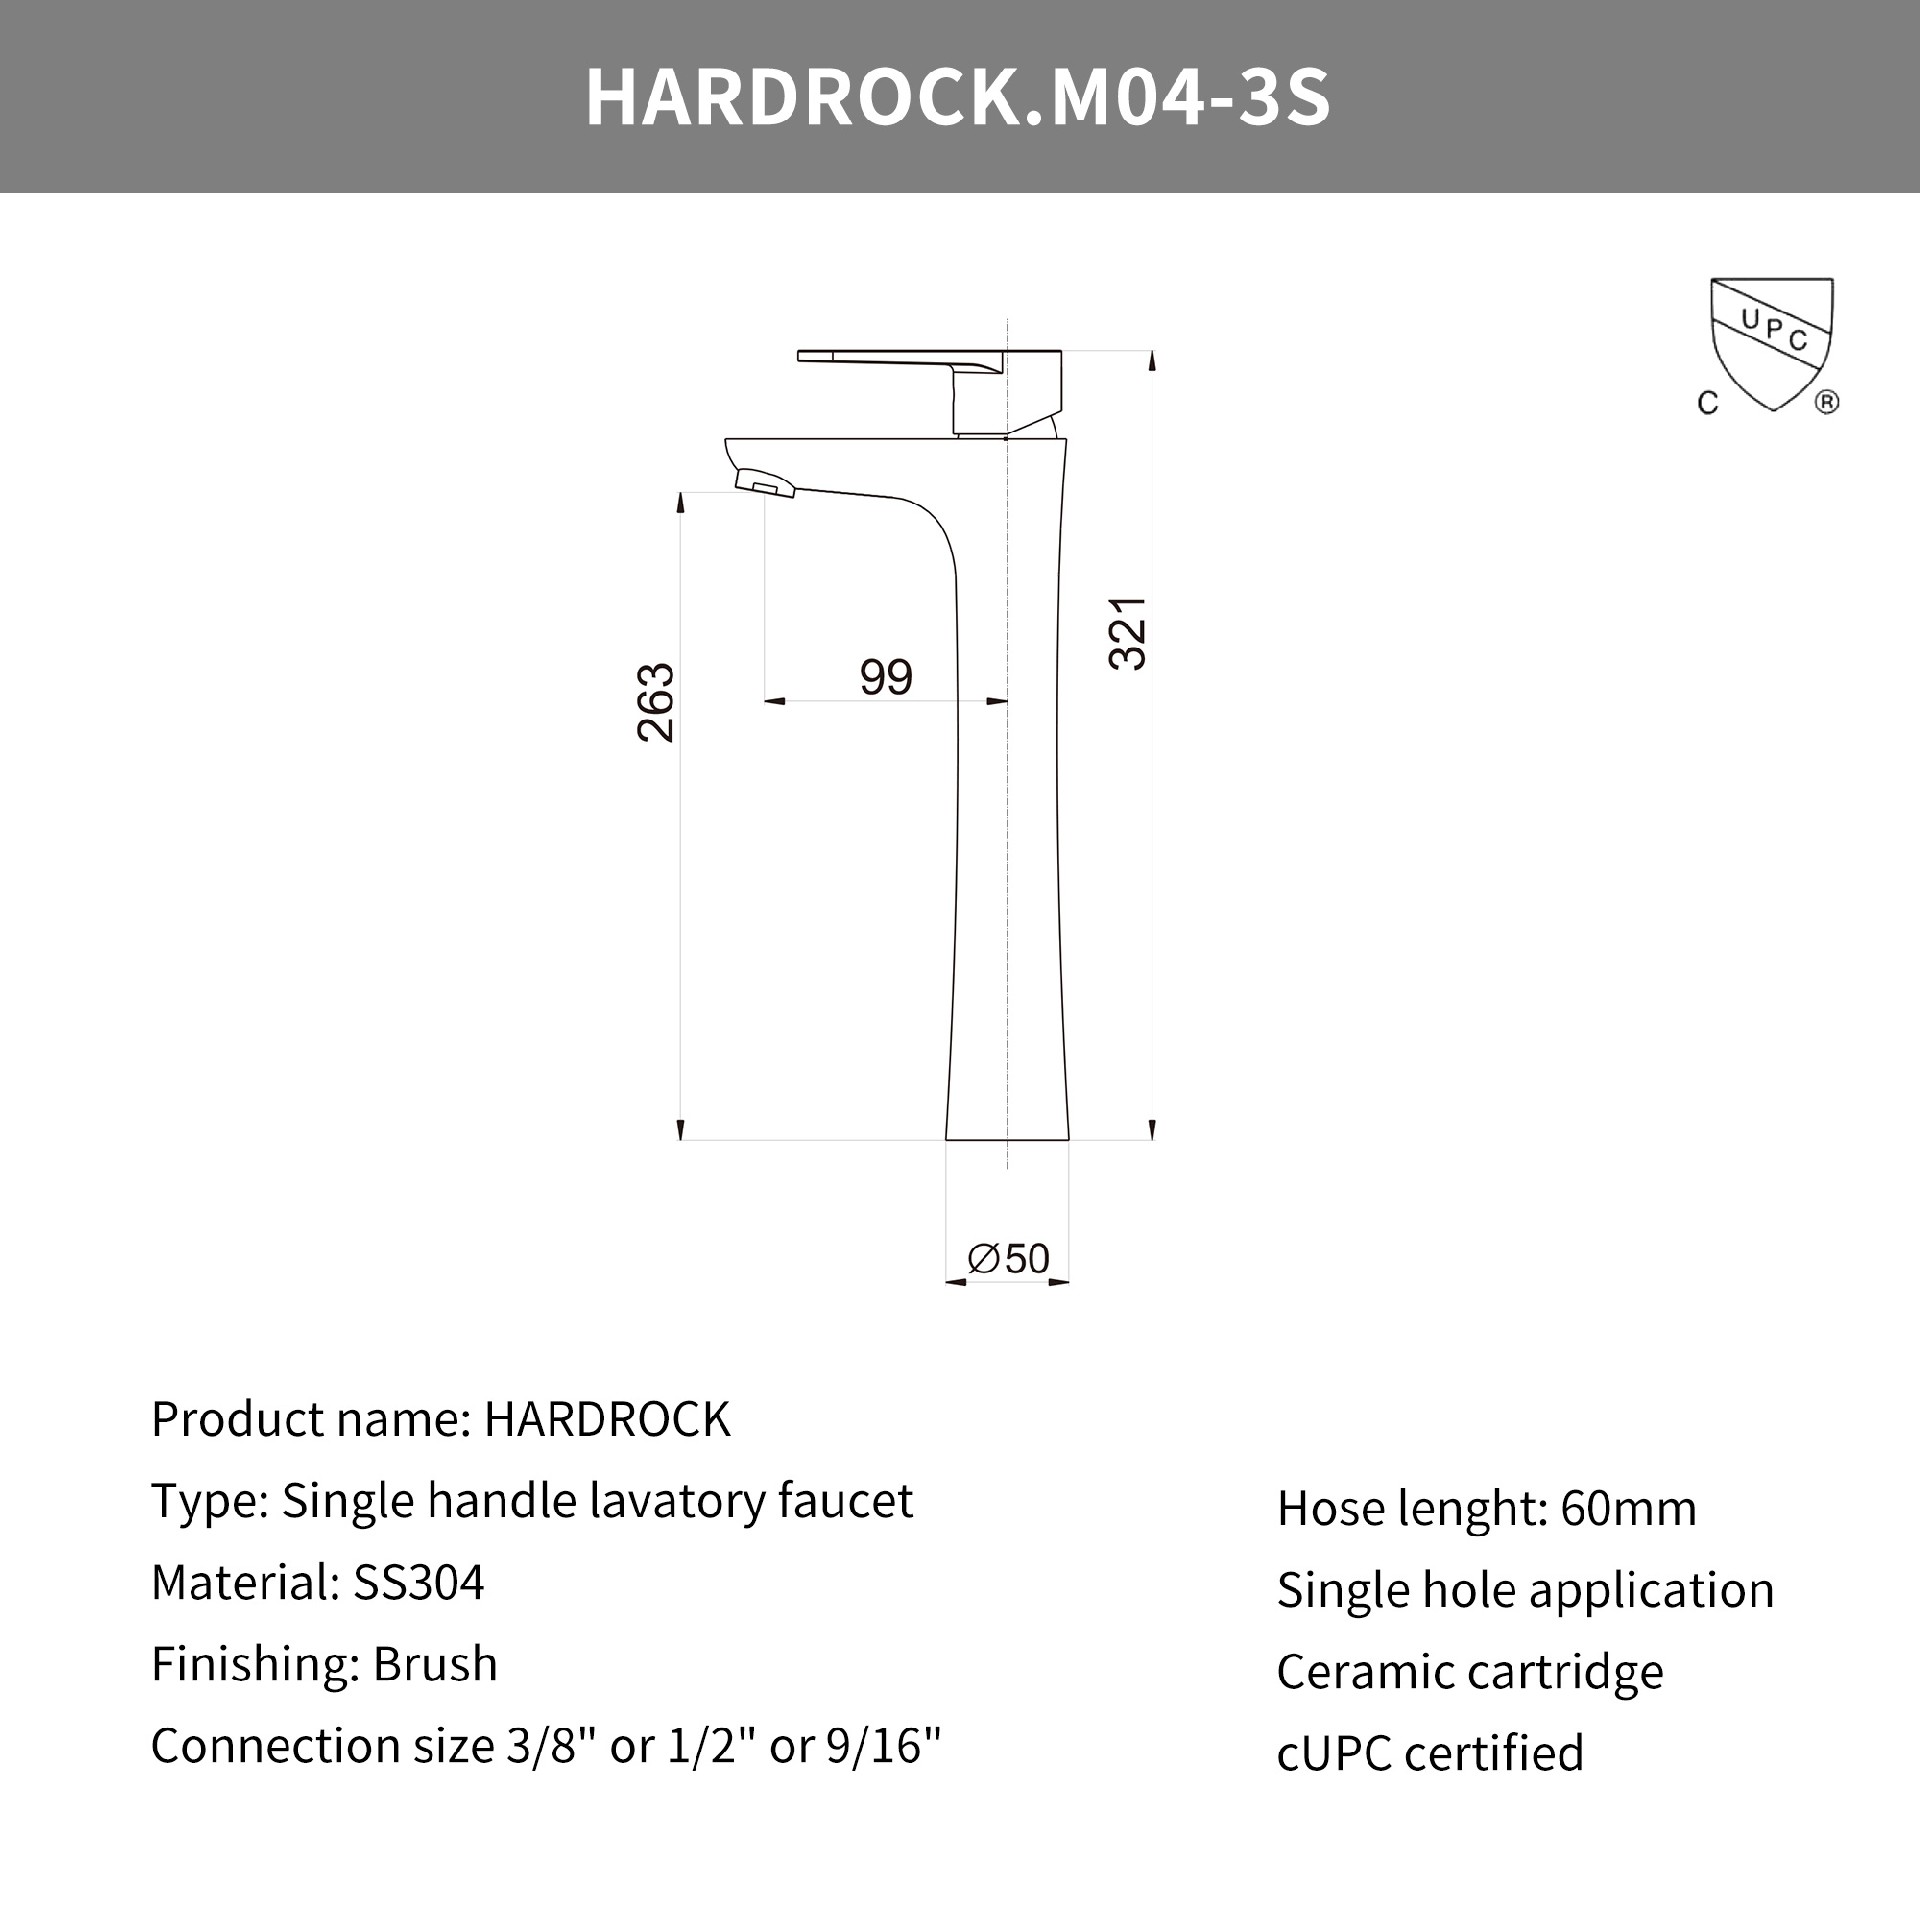 Hardrock.M04-3S